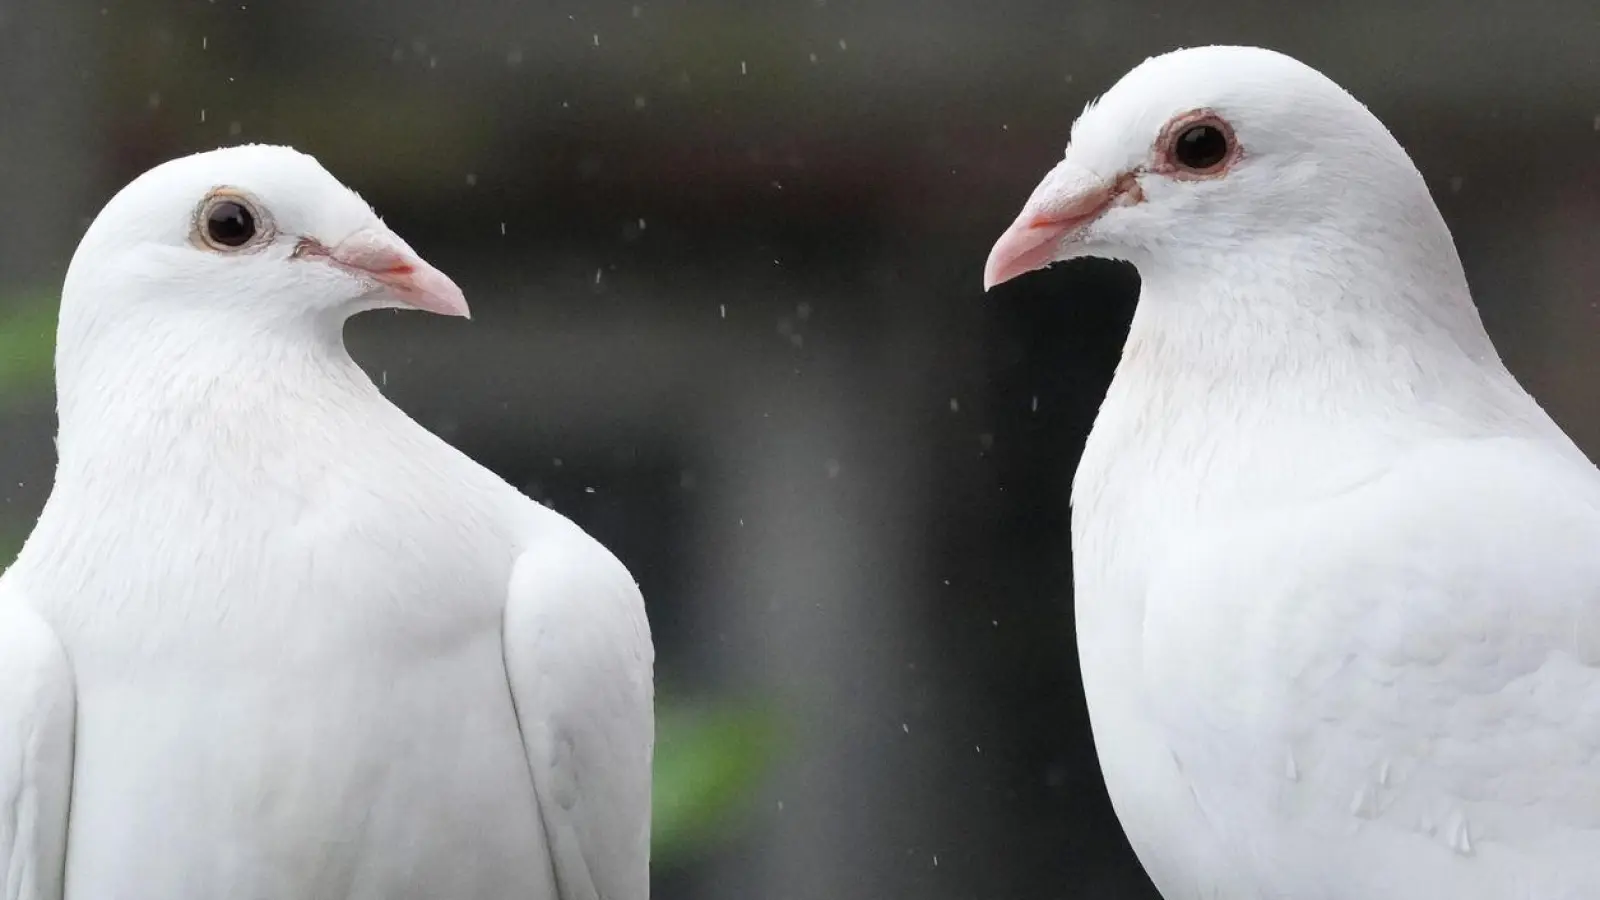 Den Brauch, Tauben bei Hochzeiten aufsteigen zu lassen, gibt es schon seit vielen Jahren. Wegen ihrer auffälligen weißen Farbe werden weiße Tauben leichter von Greifvögeln erbeutet. (Foto: Soeren Stache/dpa/Produktion)